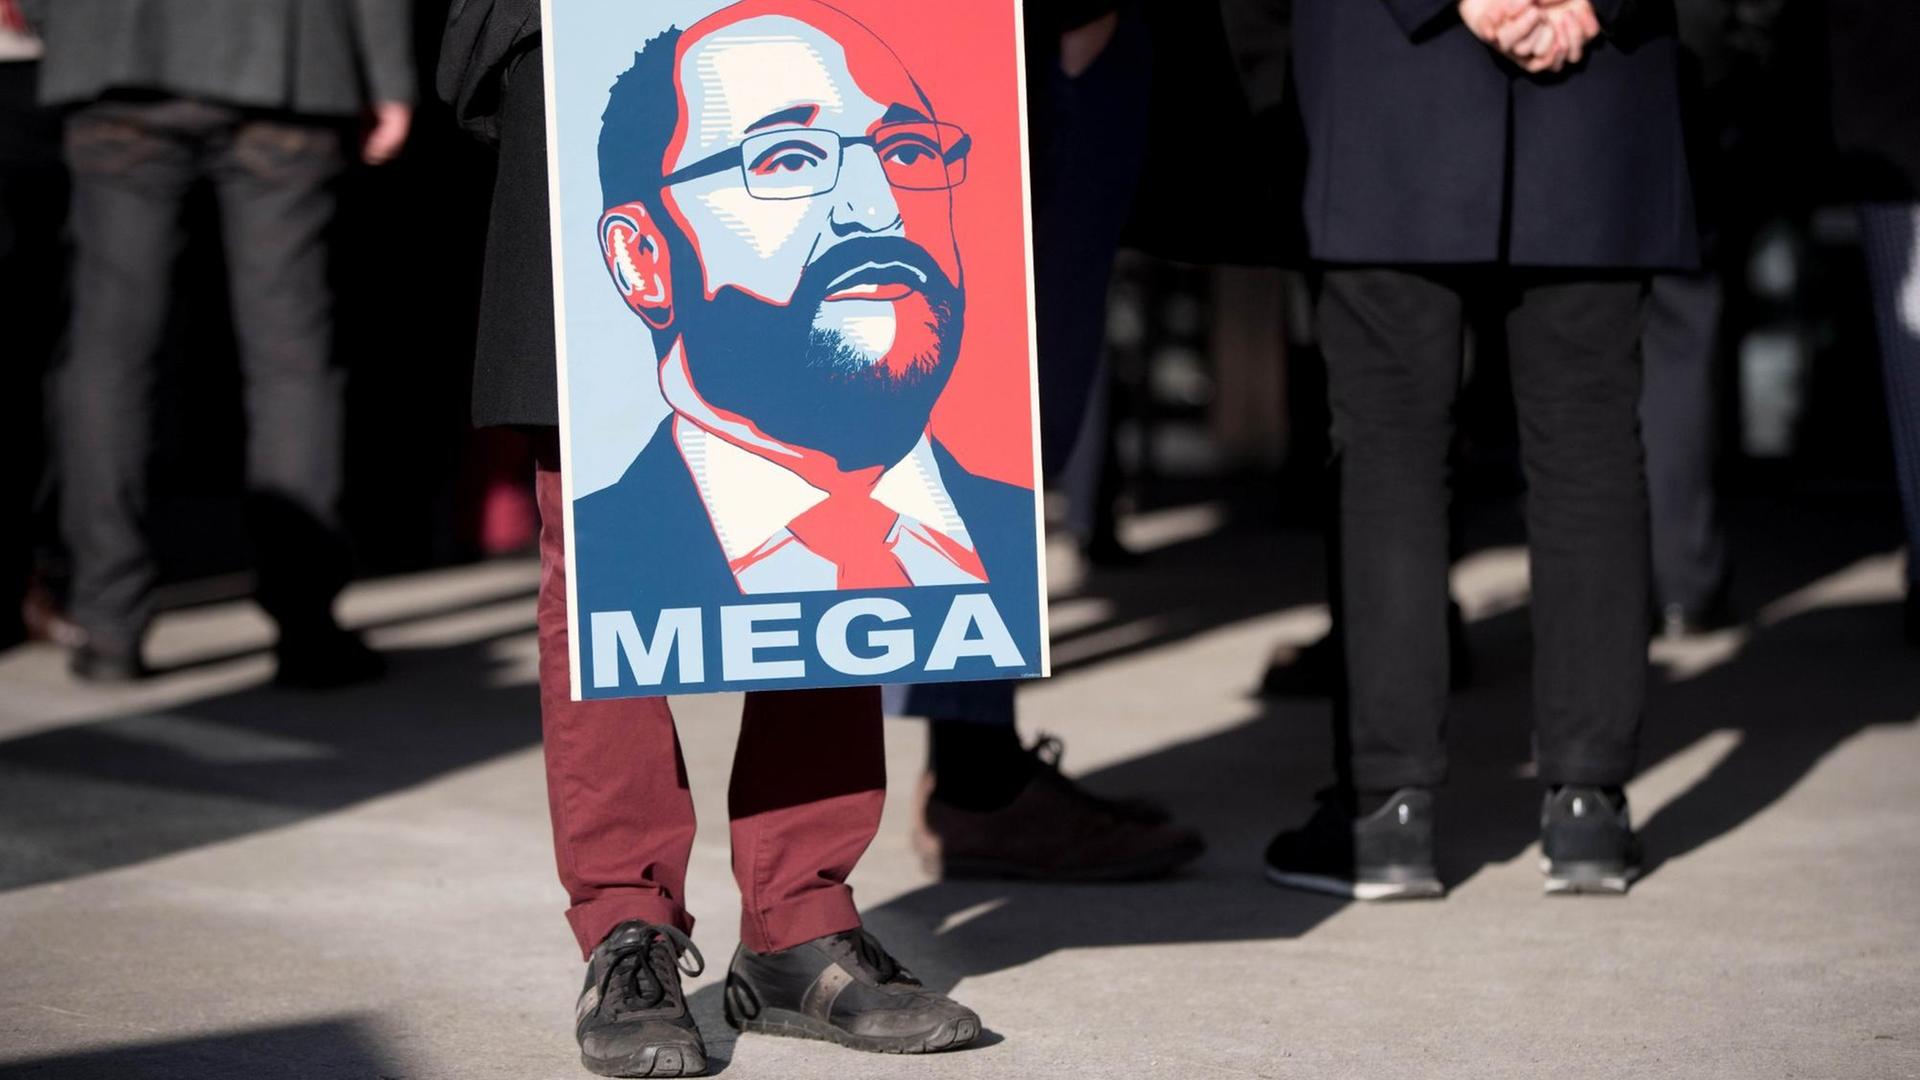 Ein SPD-Parteianhänger hält ein Plakat mit einem Bild des SPD-Kanzlerkandidaten Martin Schulz und der Aufschrift "Mega".